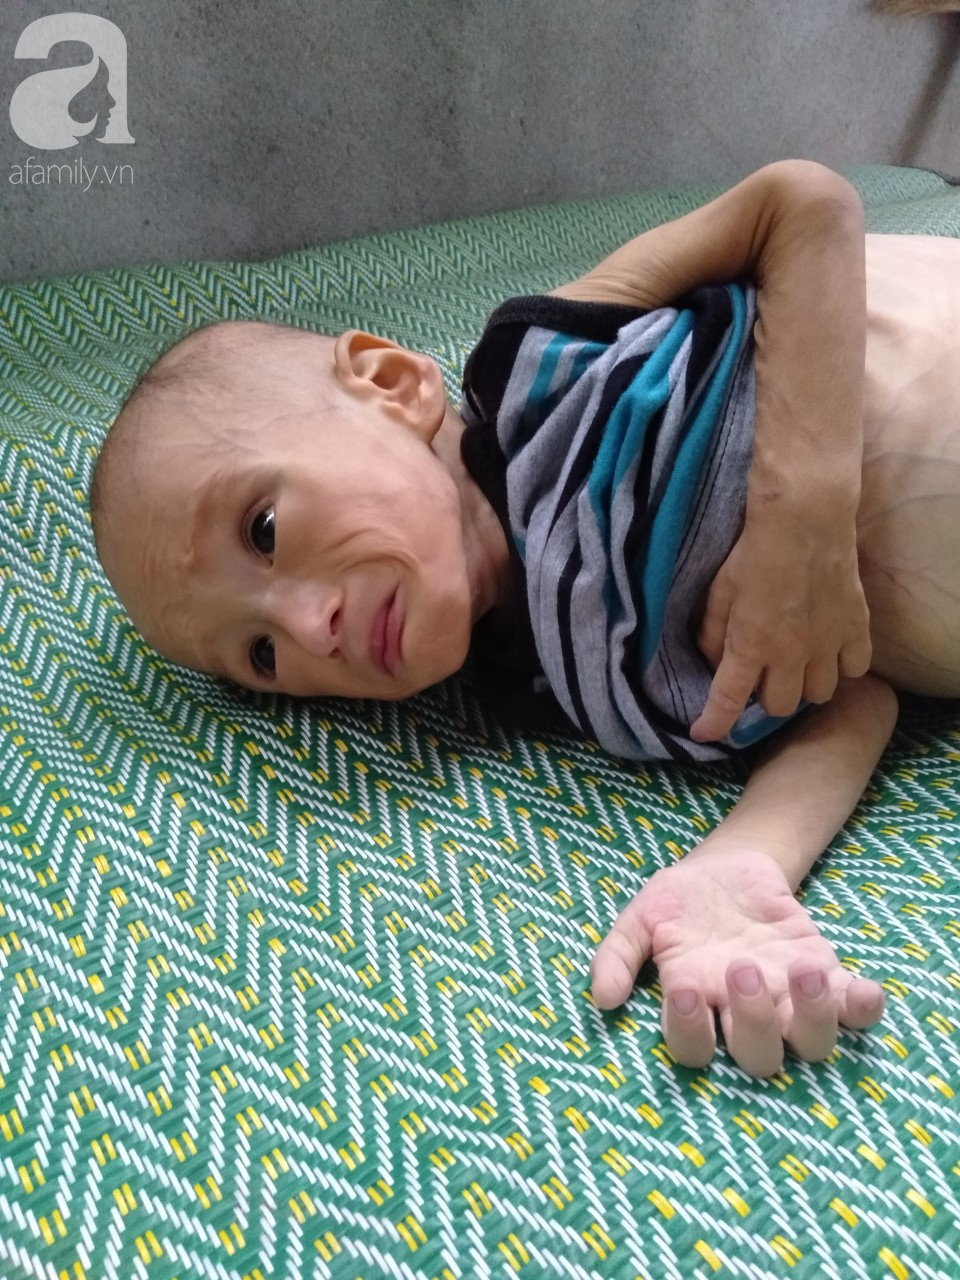 Sự sống mong manh của bé trai 1 tuổi, chỉ nặng 6kg, bụng phình to như cái trống mà mẹ nghèo không tiền chữa trị - Ảnh 4.